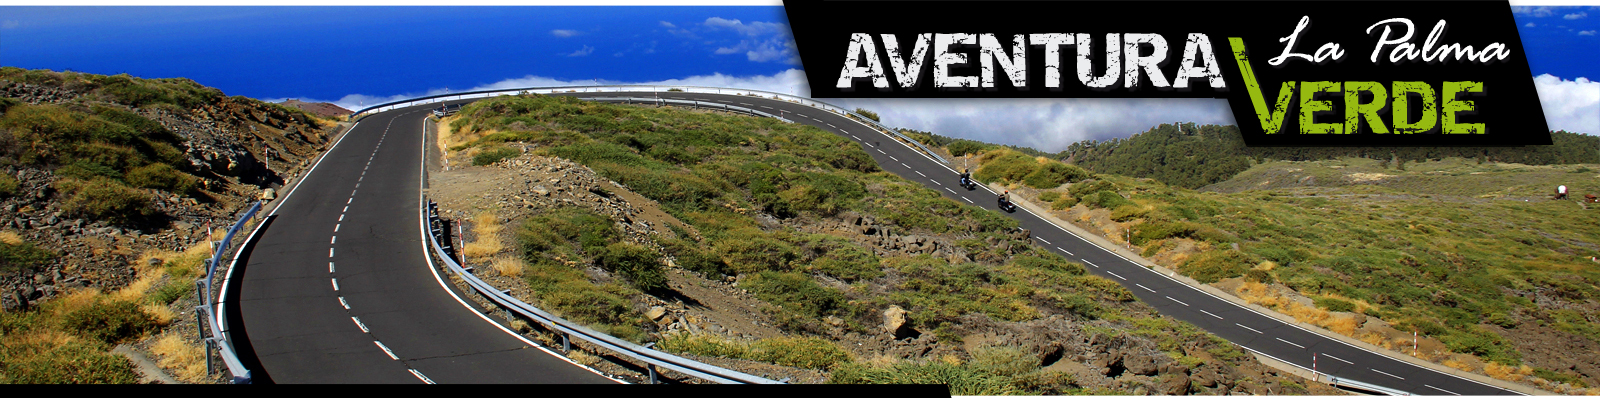 Aventura Verde - La Palma - Motorradvermietung